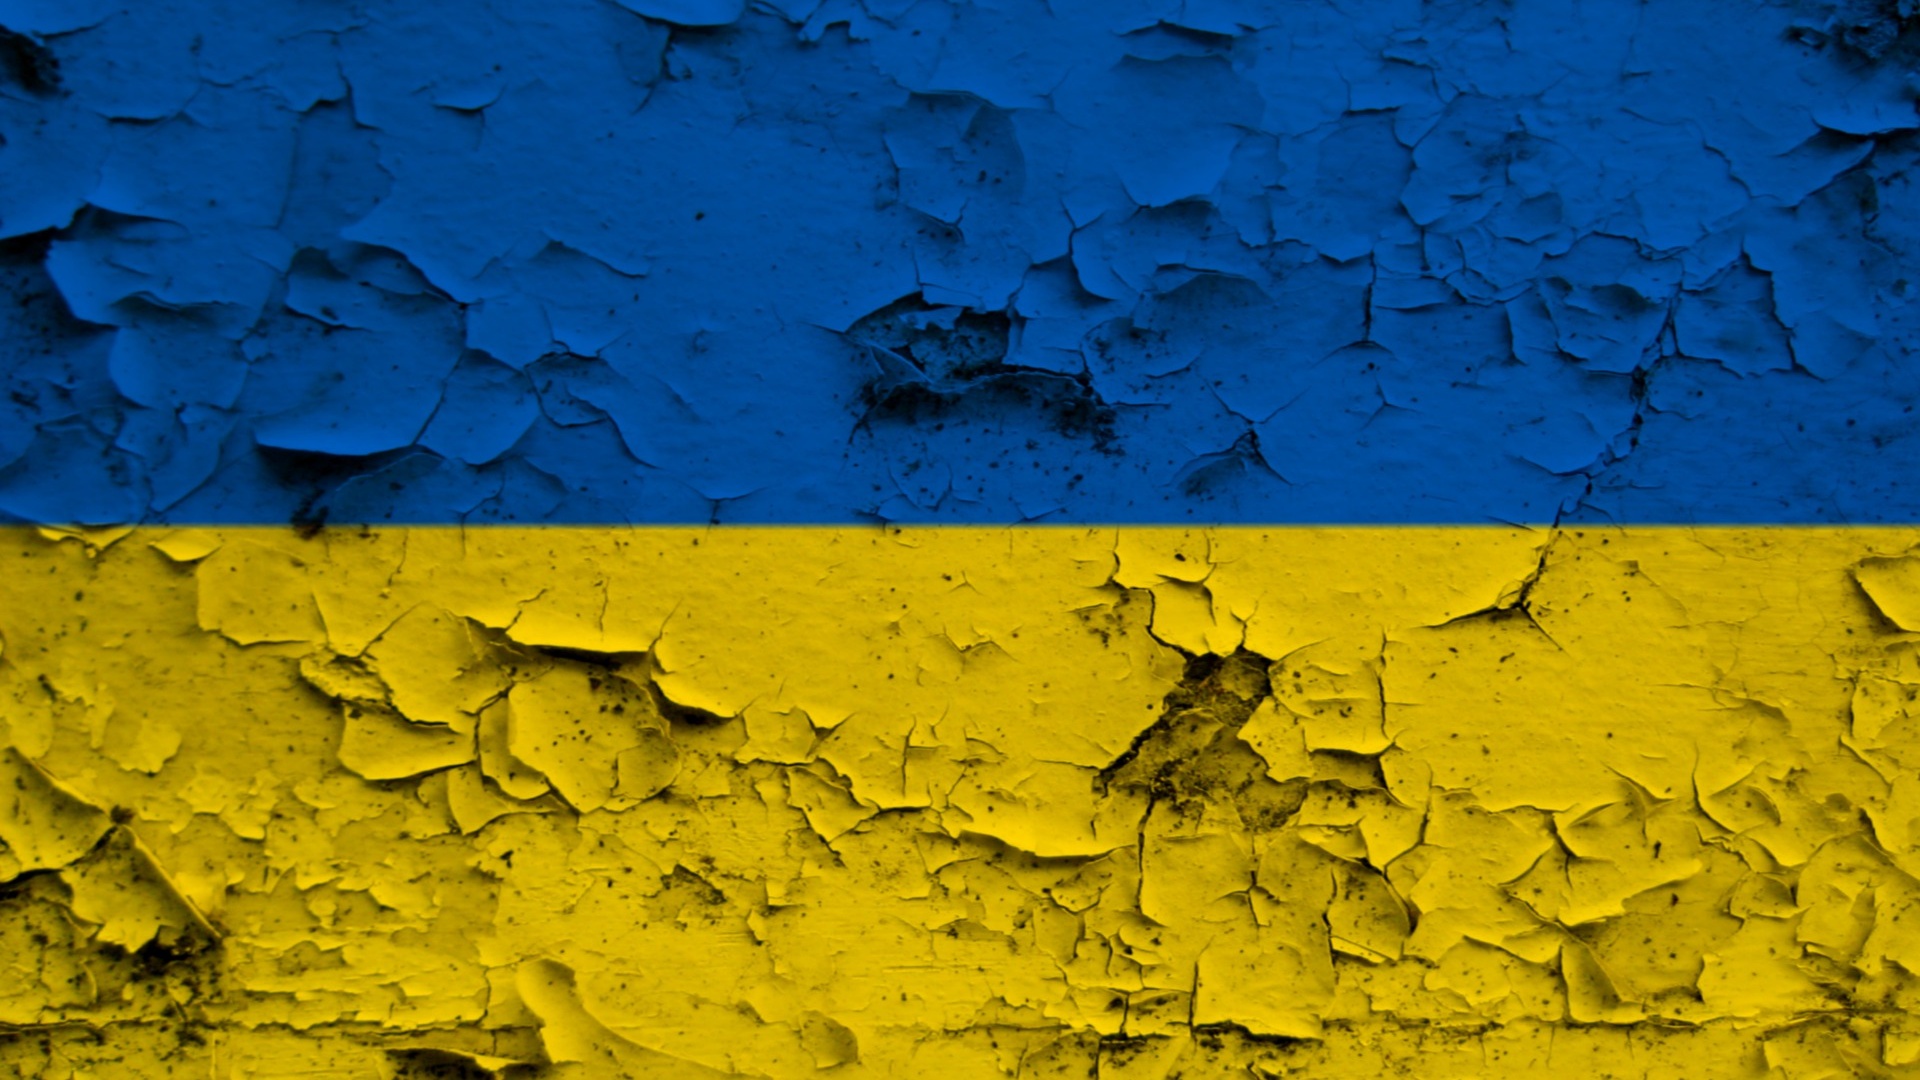 Ukrajina, vlajka